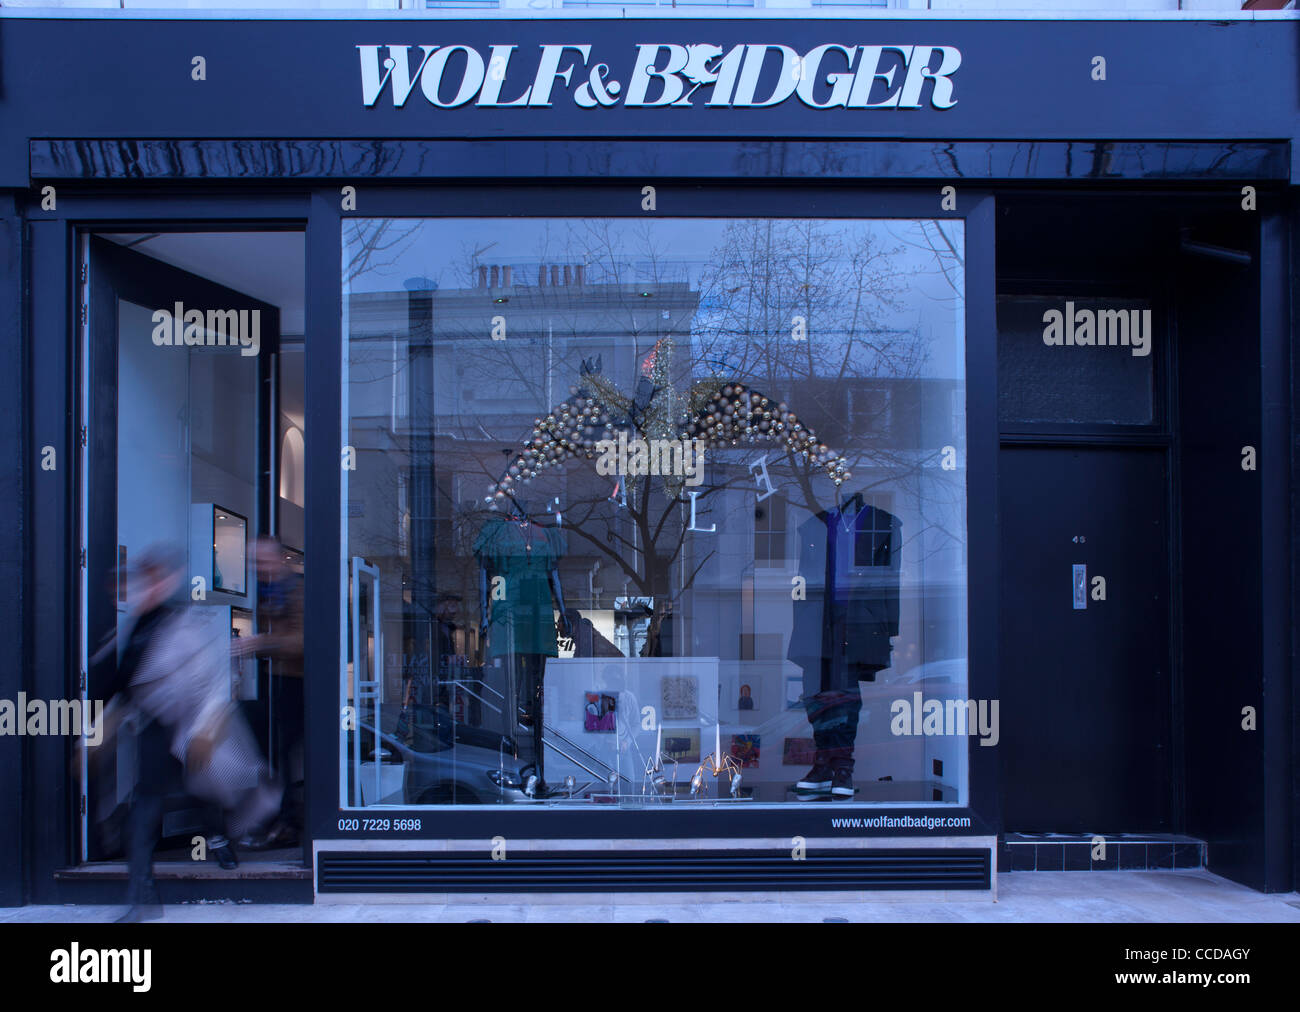 Wolf & Badger, boutique de mode, 46 Ledbury Road, Notting Hill, London W11 2AB, crépuscule vue extérieure avec motion plus bleue Banque D'Images